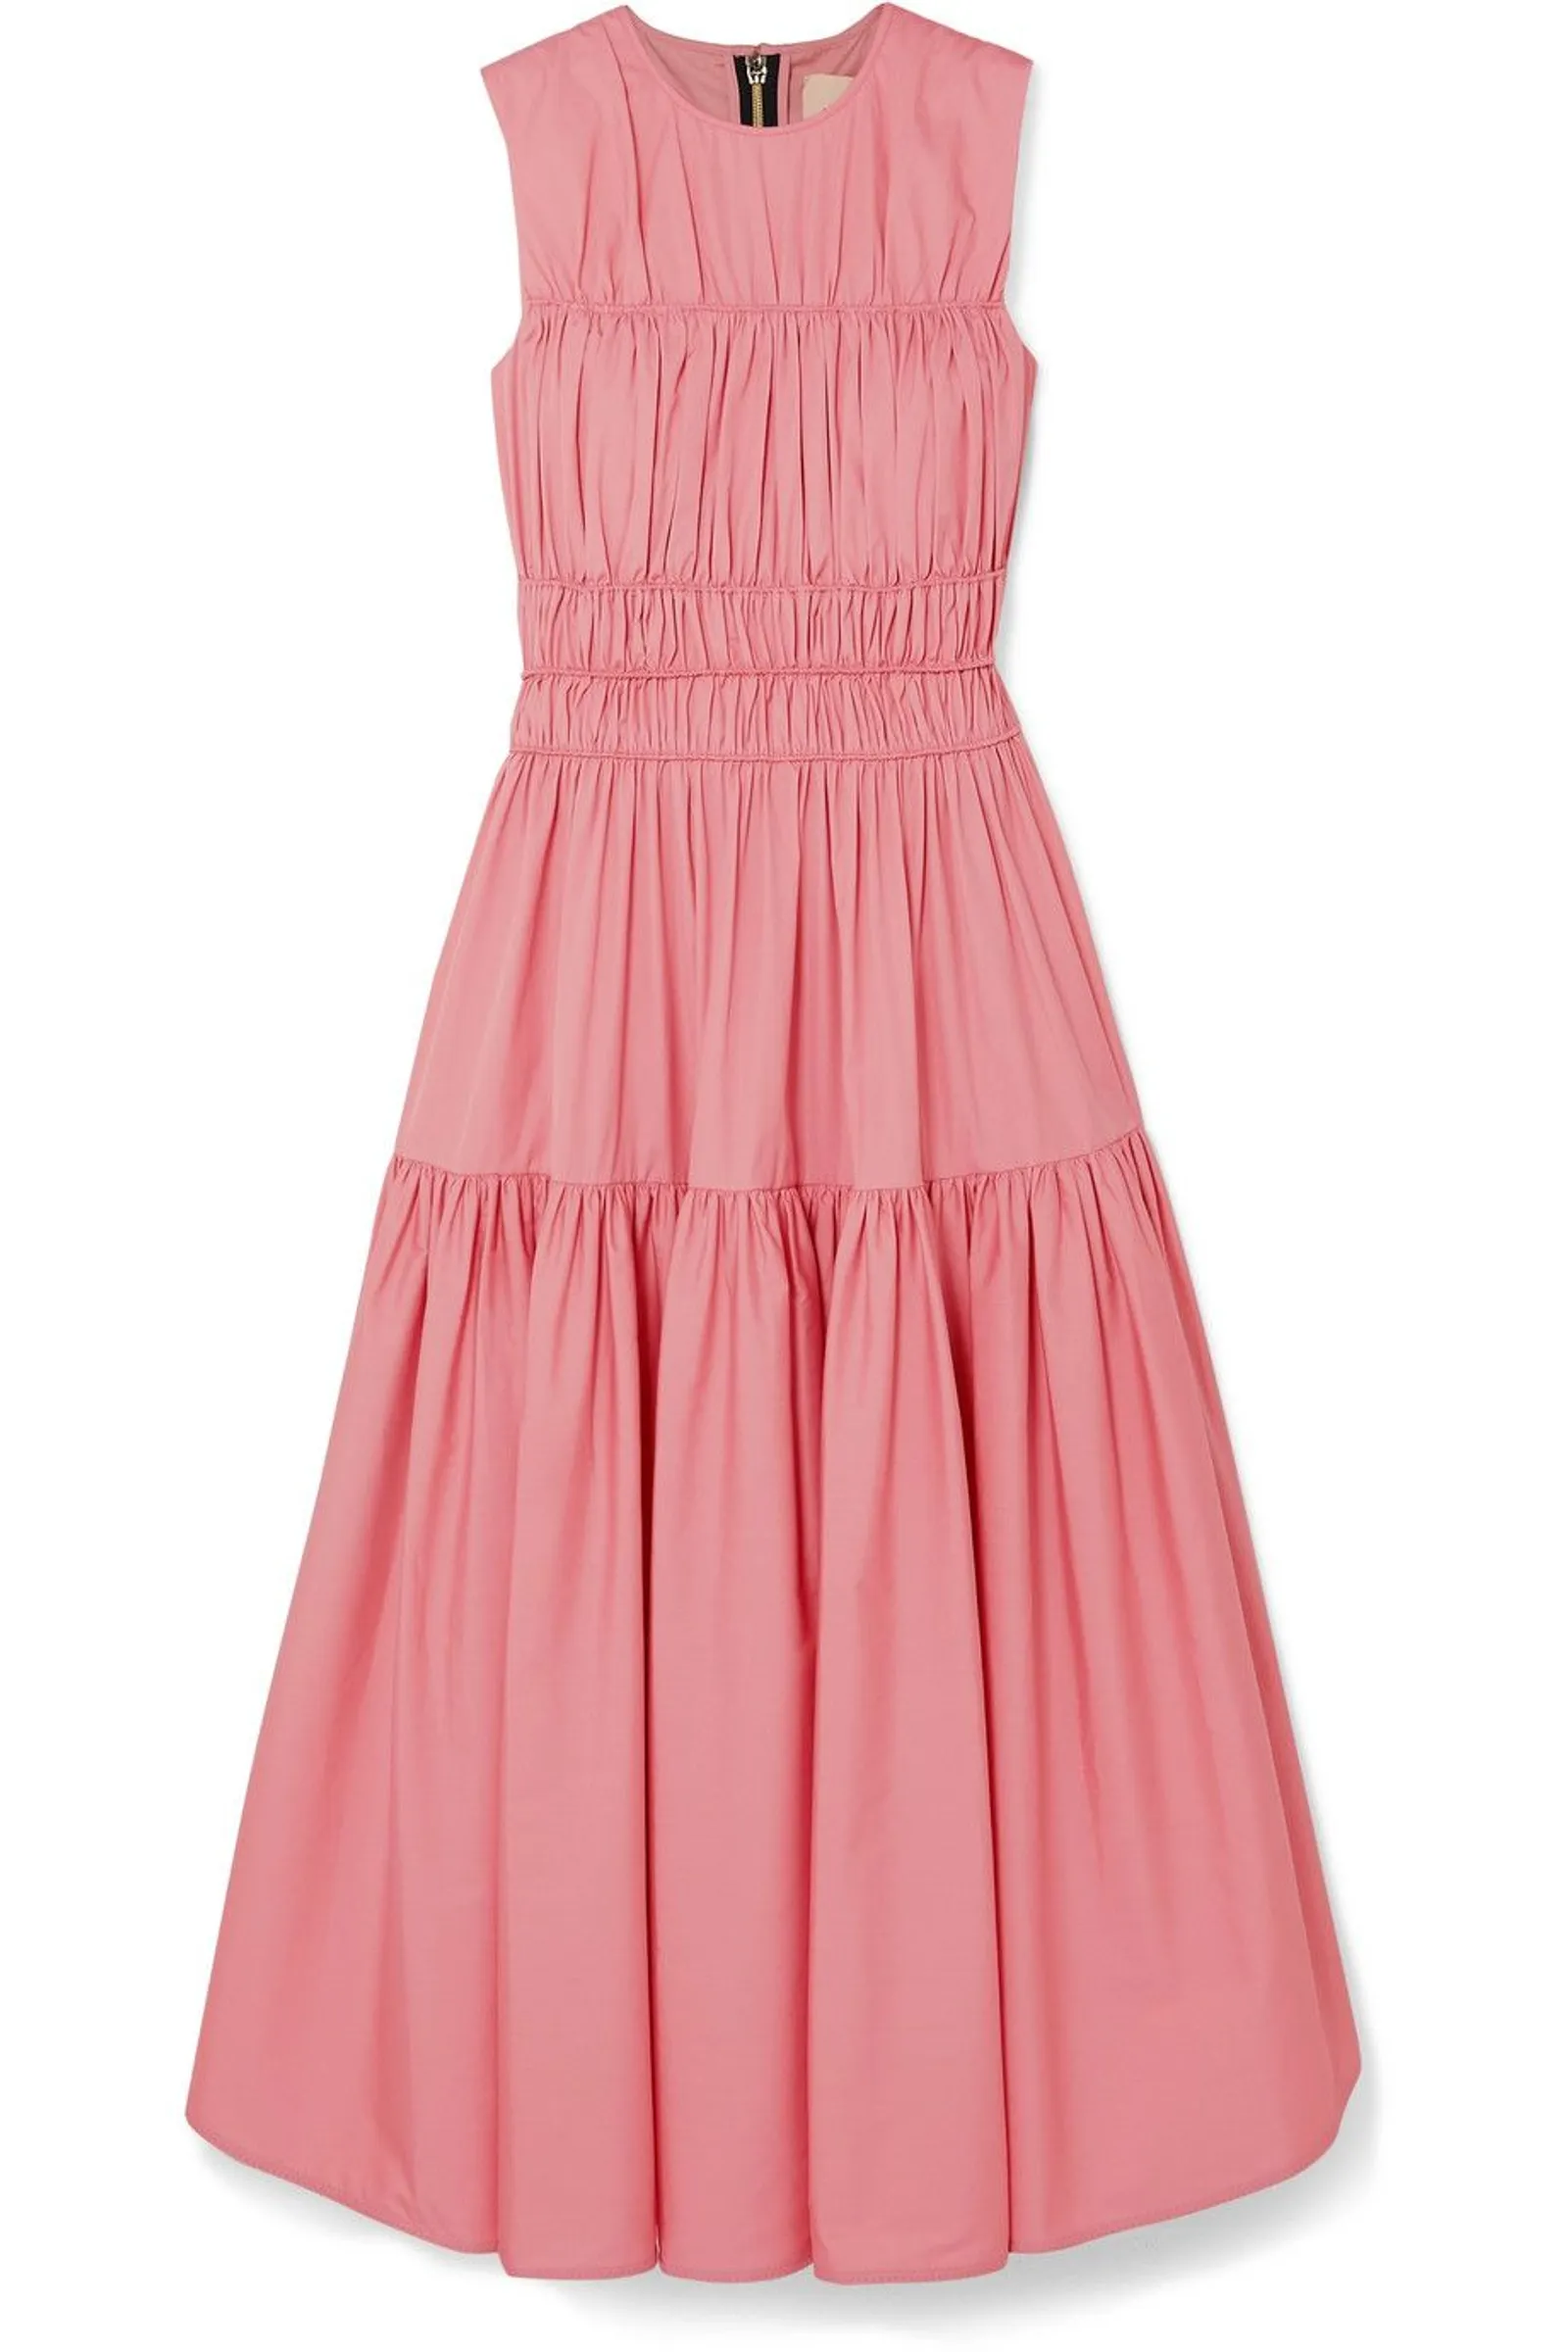 #PopbelaOOTD: Bukan Tipikal Pink Dress yang Romantis